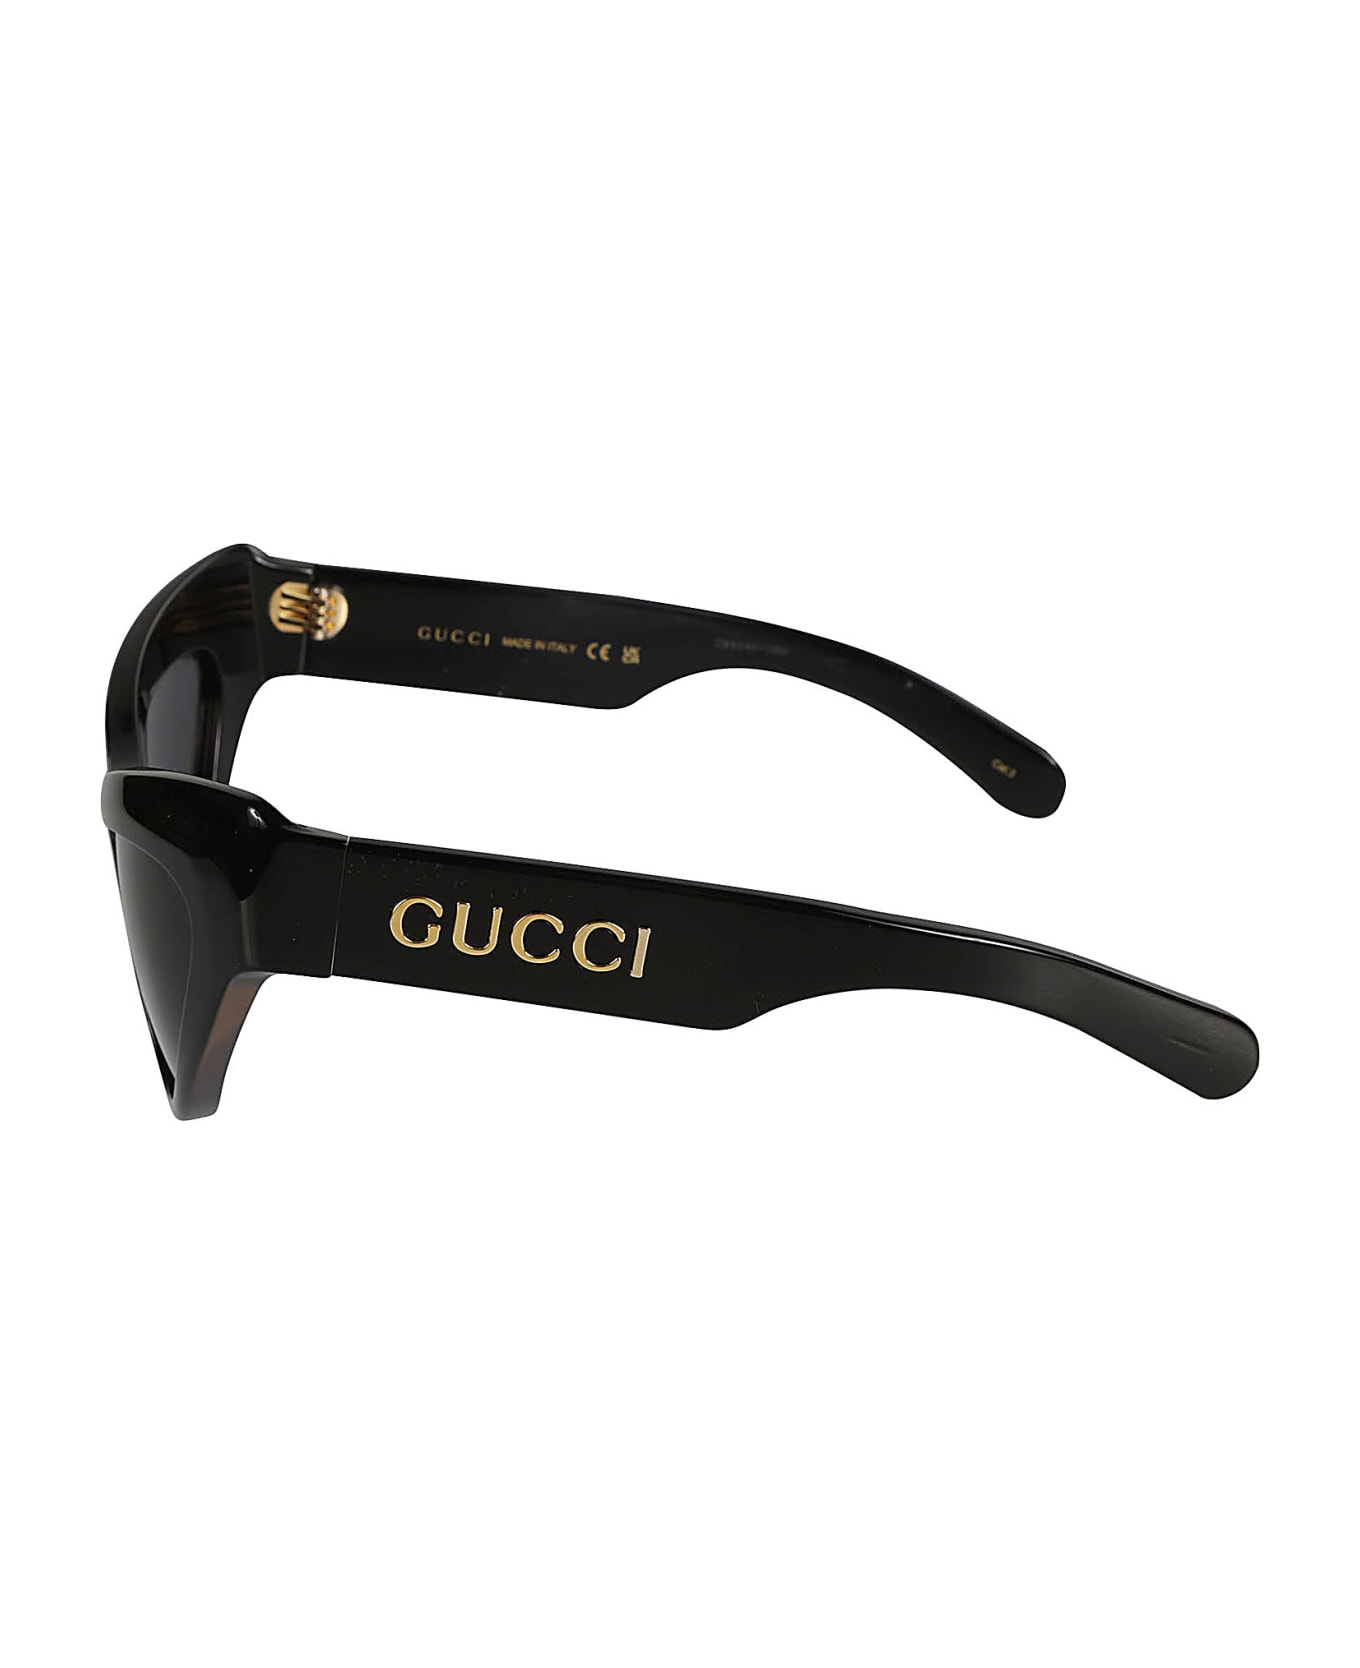 Gucci Eyewear Cat Eye Thick Sunglasses Dynasty - Black